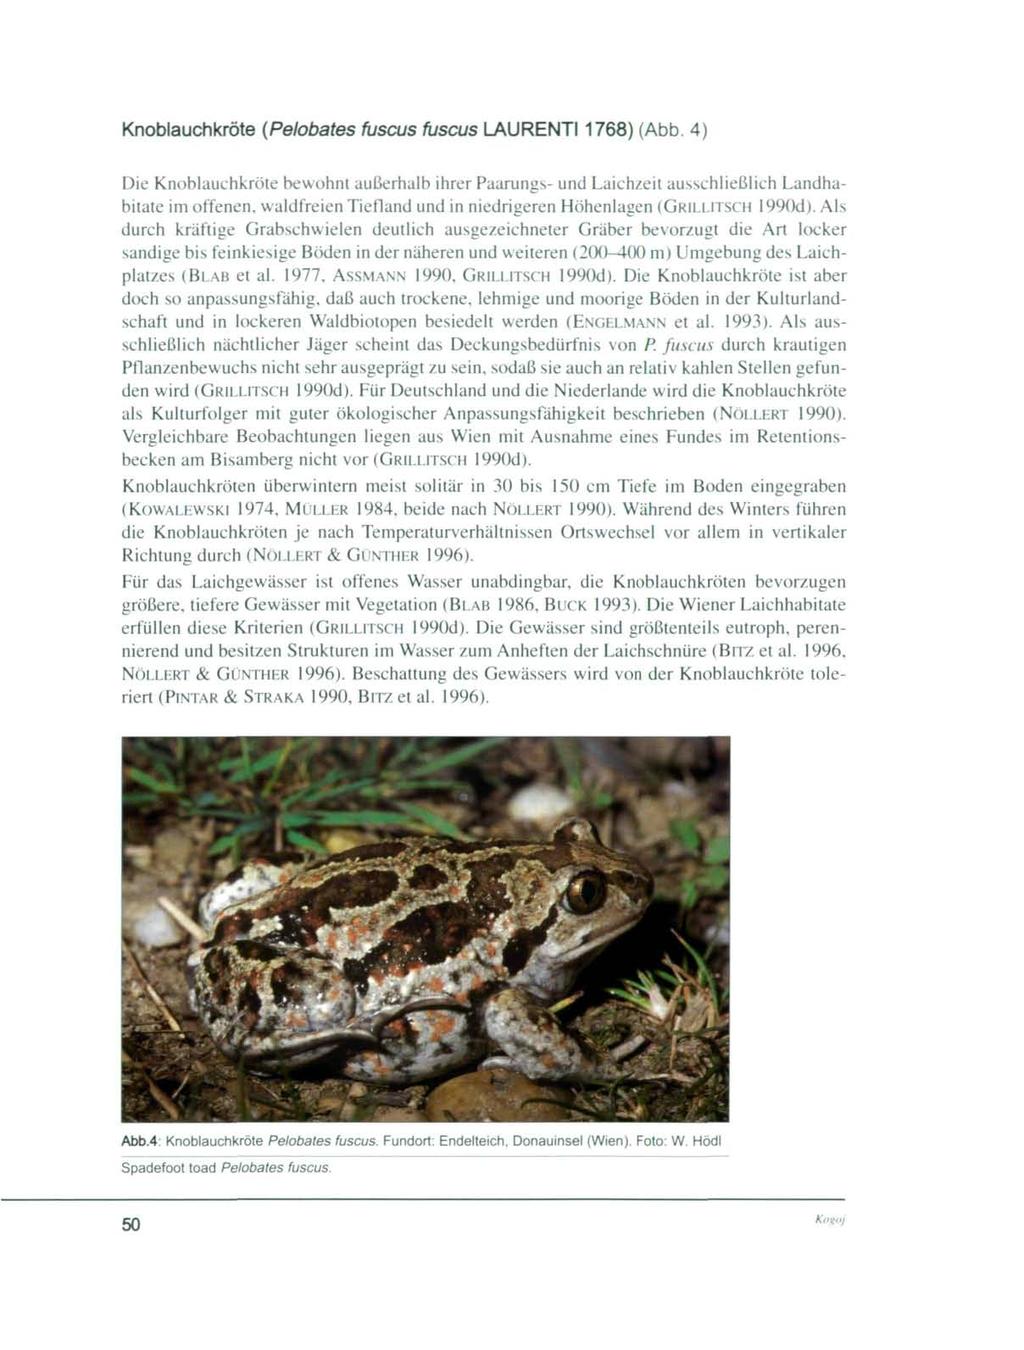 Knoblauchkröte (Pelobates fuscus fuscus LAURENT11768) (Abb.